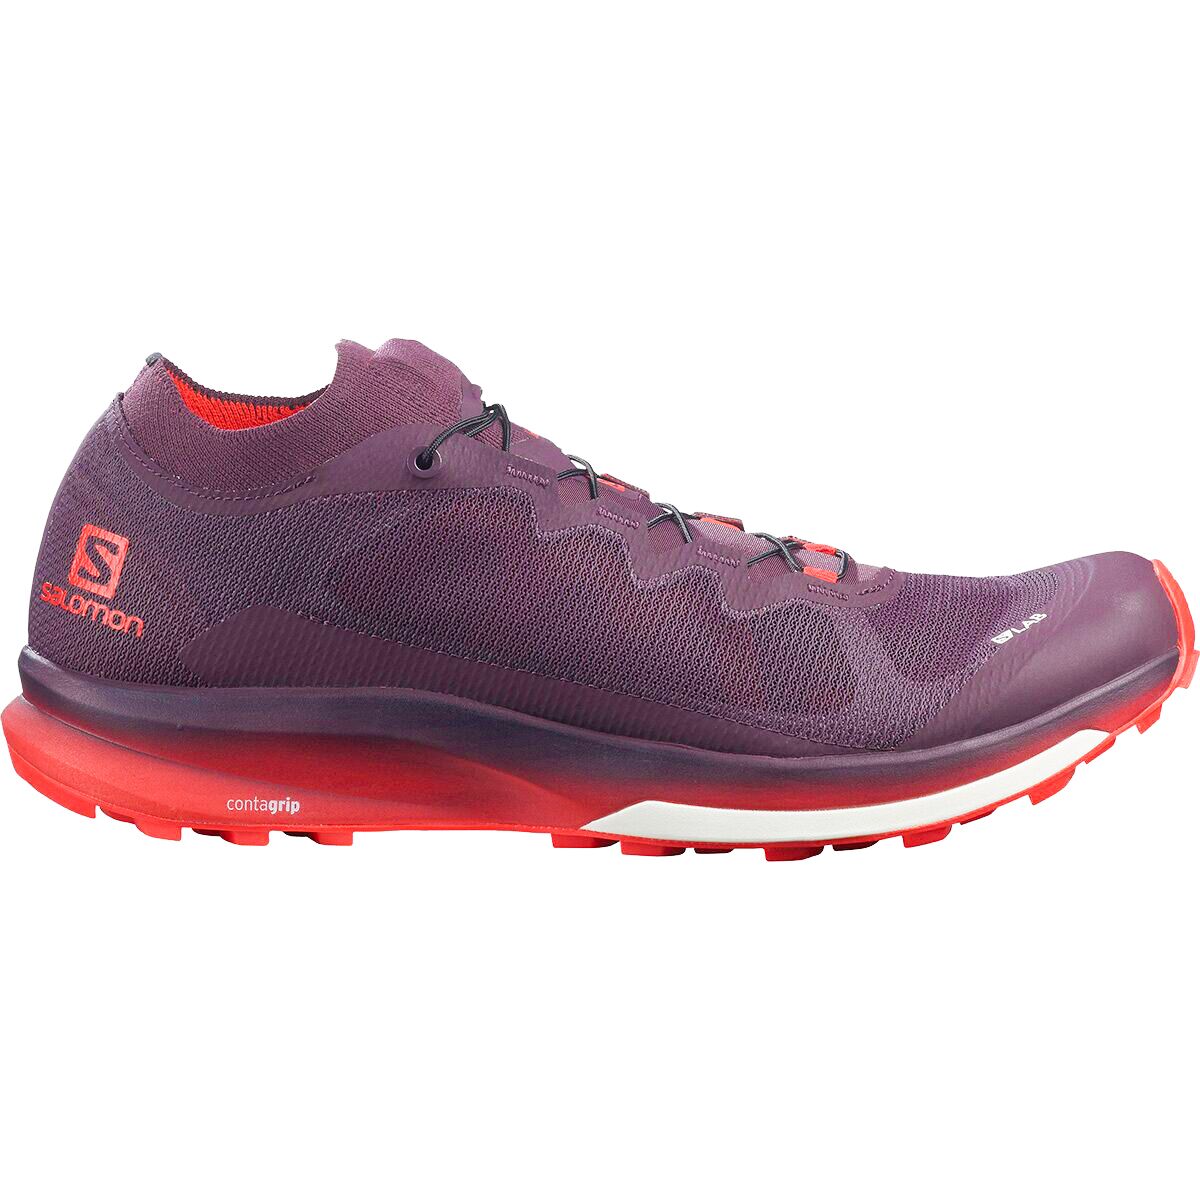 Кроссовки для бега по пересеченной местности s/lab ultra 3 Salomon, цвет maverick/racing red s05/maverick фото